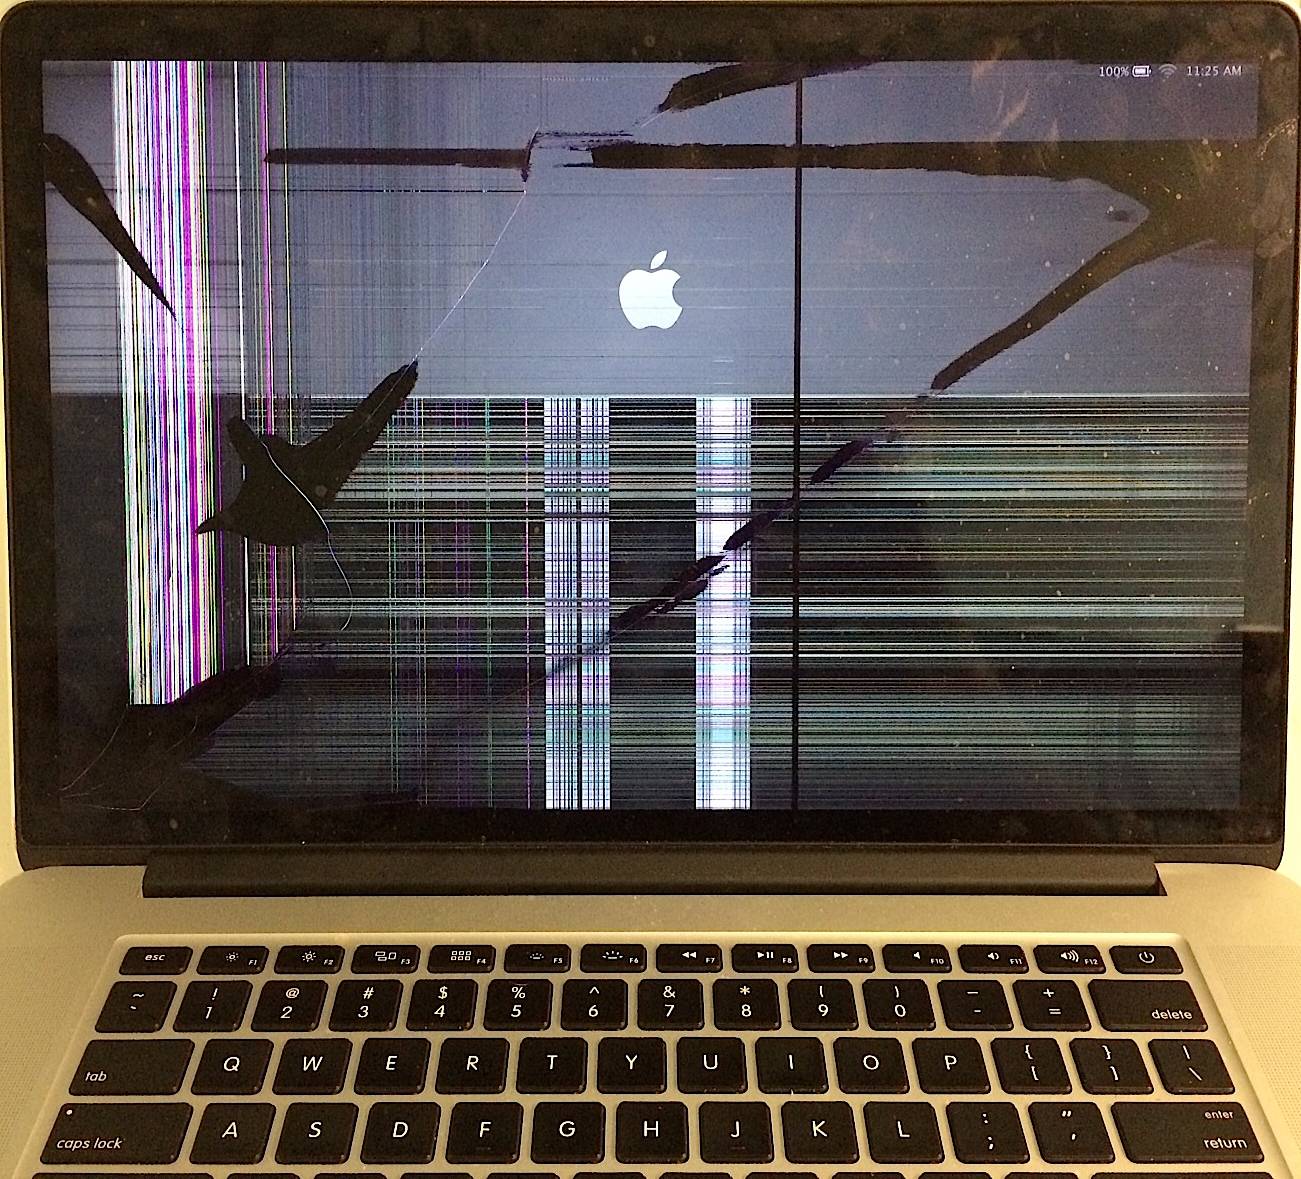 Devriez-vous réparer votre MacBook cassé ou vaut-il mieux en acheter un nouveau ?